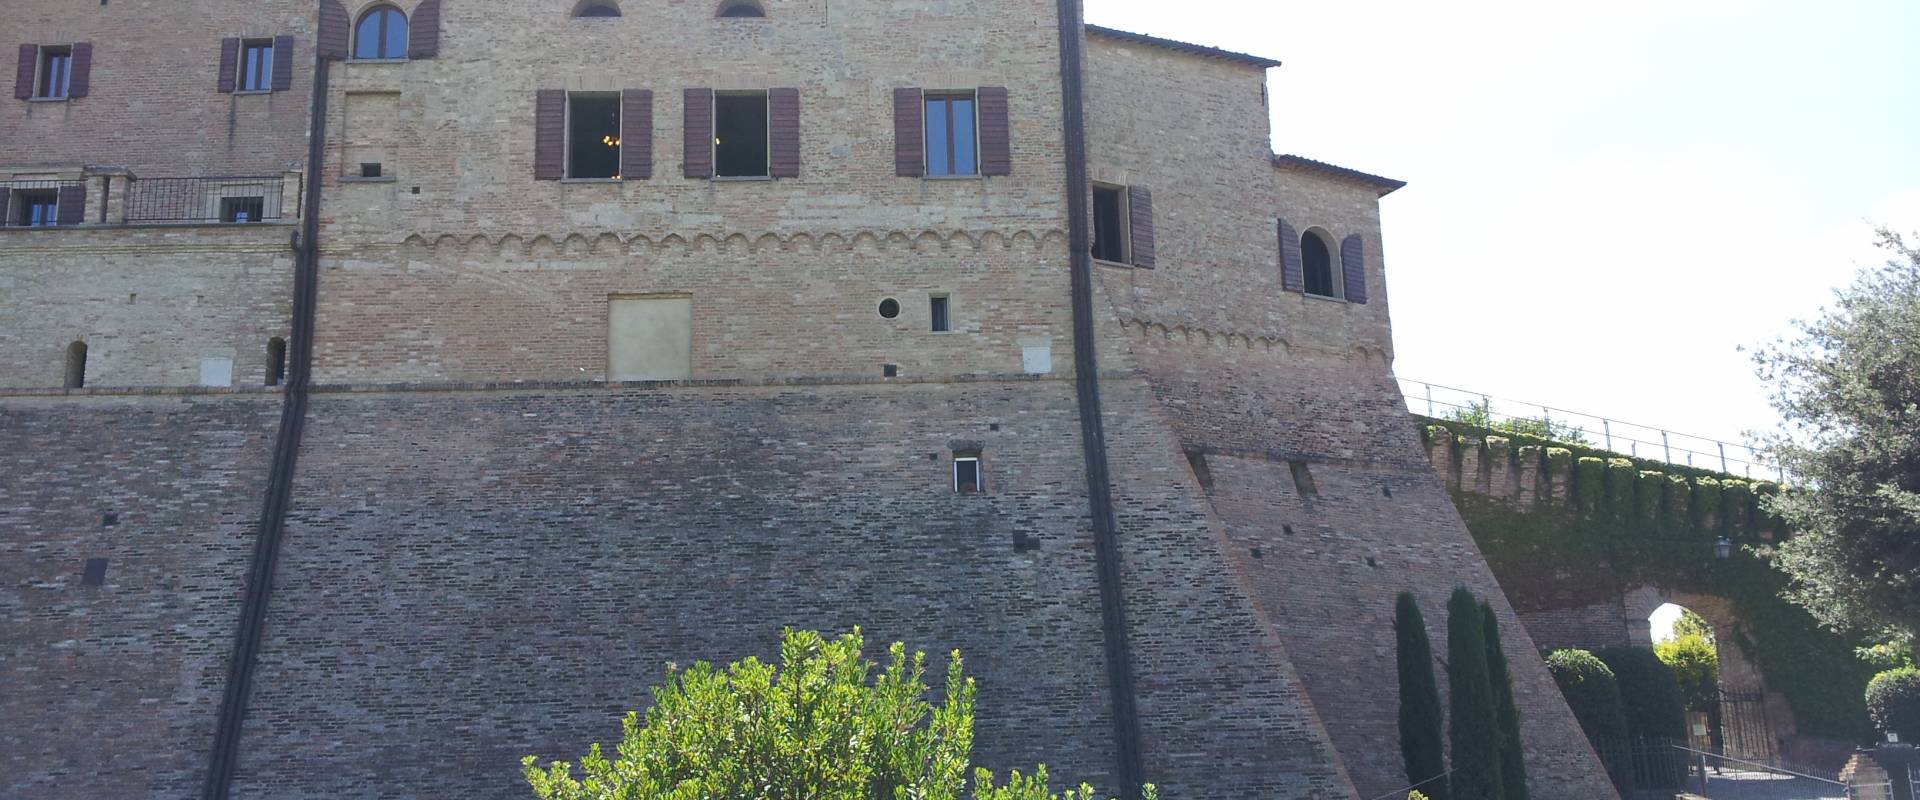 Rocca di Bertinoro e Ingresso al Museo foto di NoStressIvan